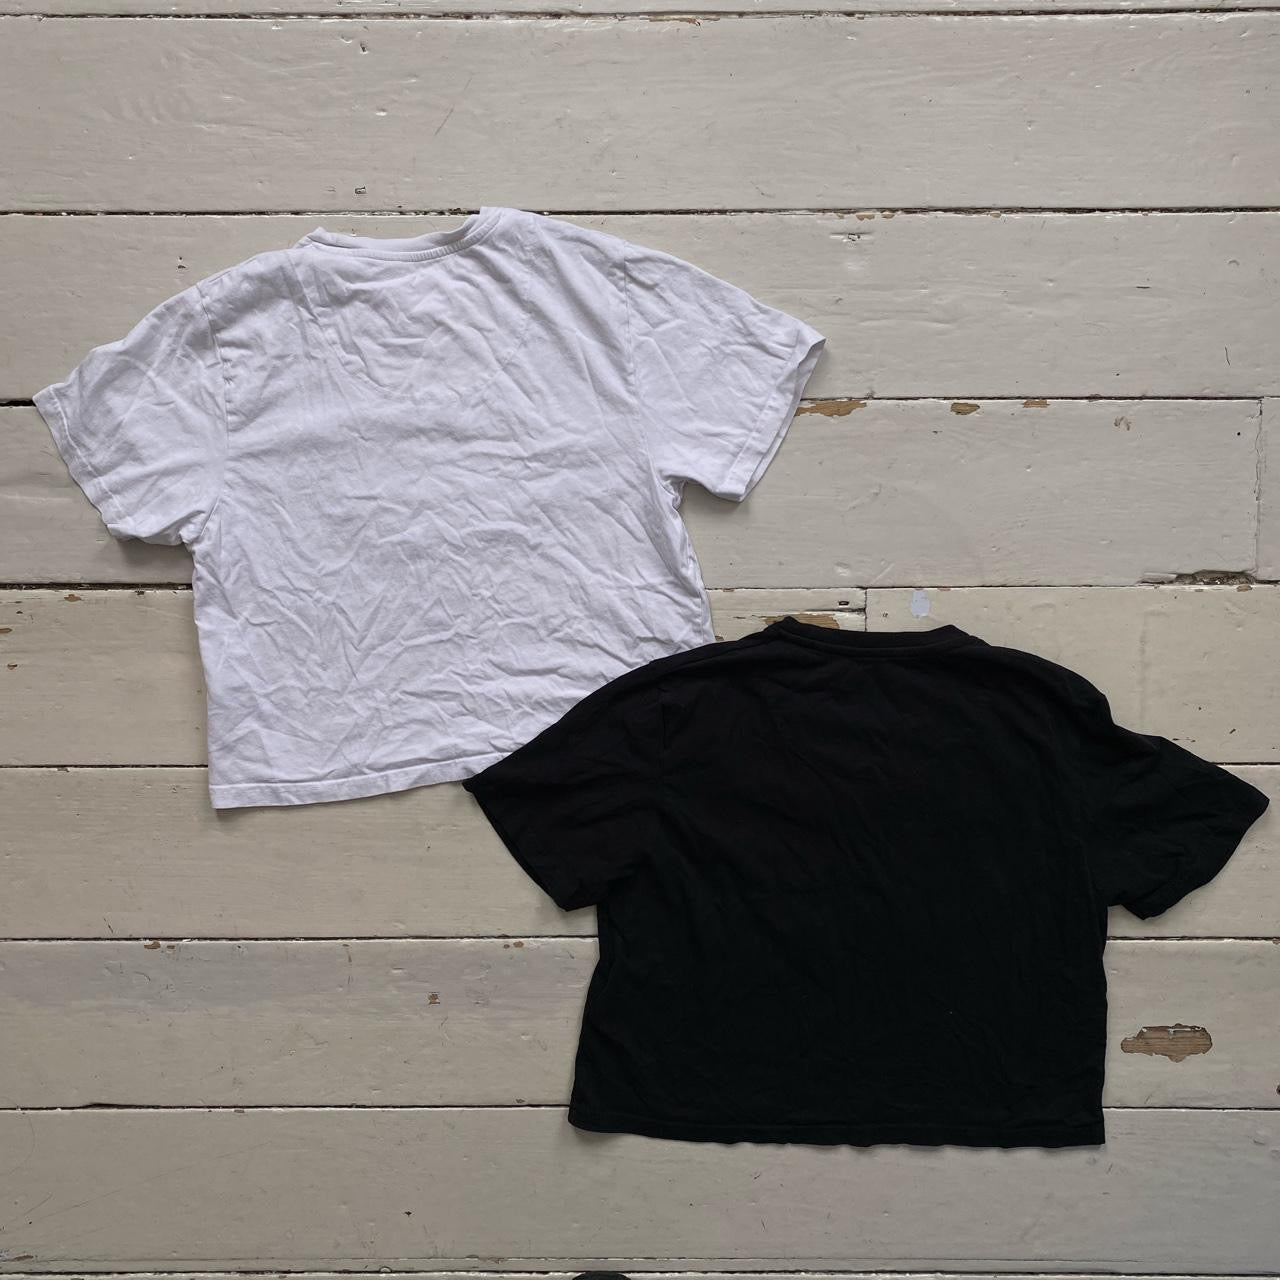 Von Dutch Crop Top T Shirts (Size 12’s)